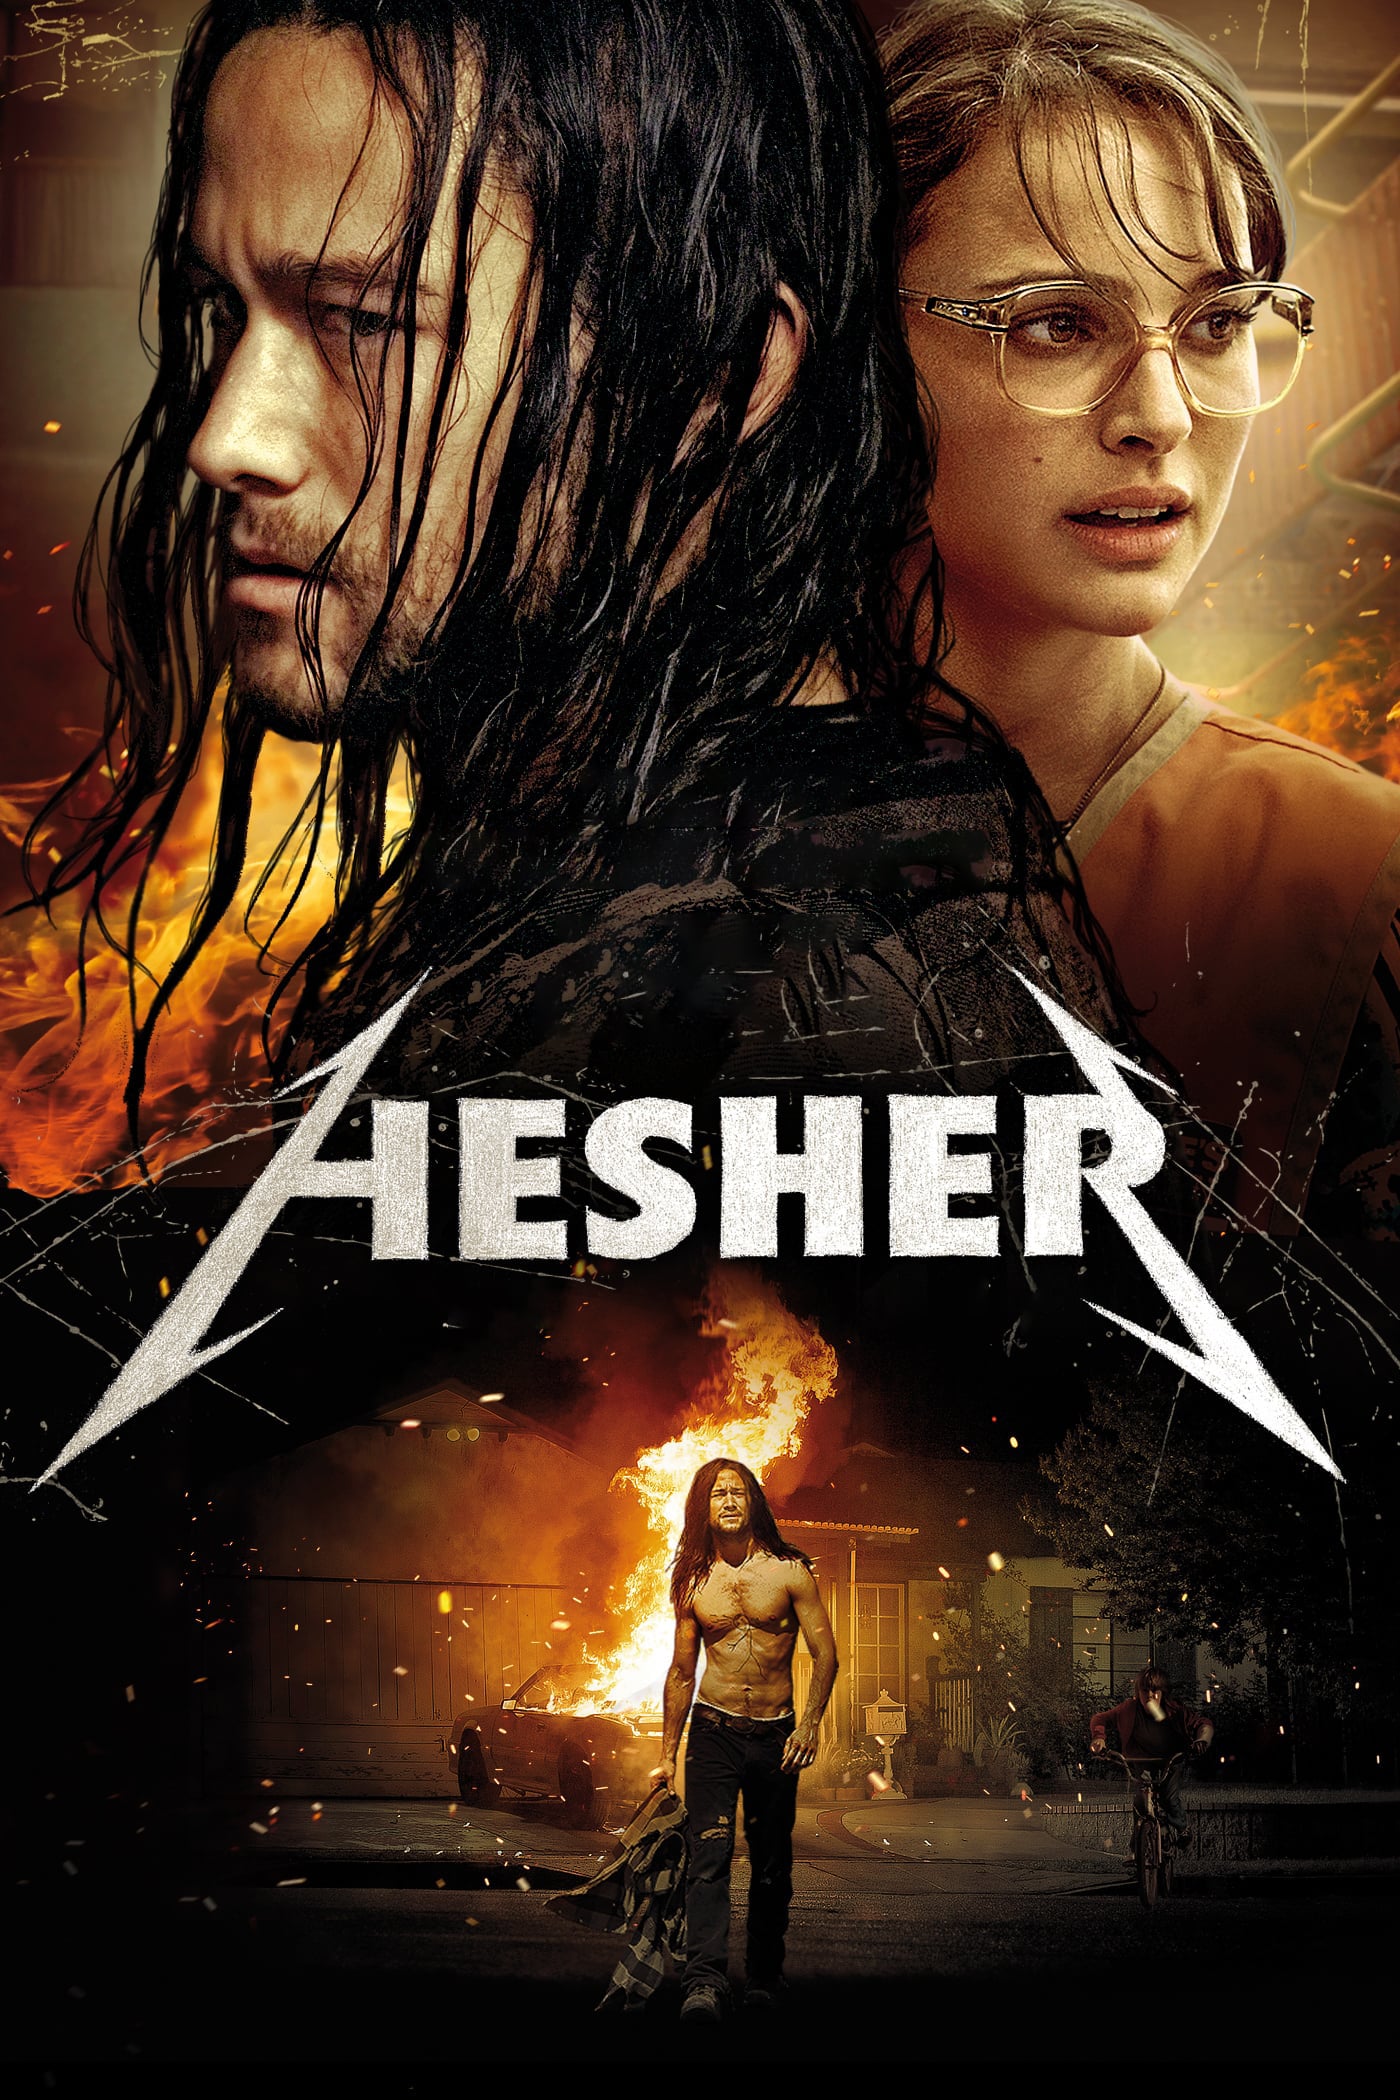 Plakat von "Hesher - Der Rebell"